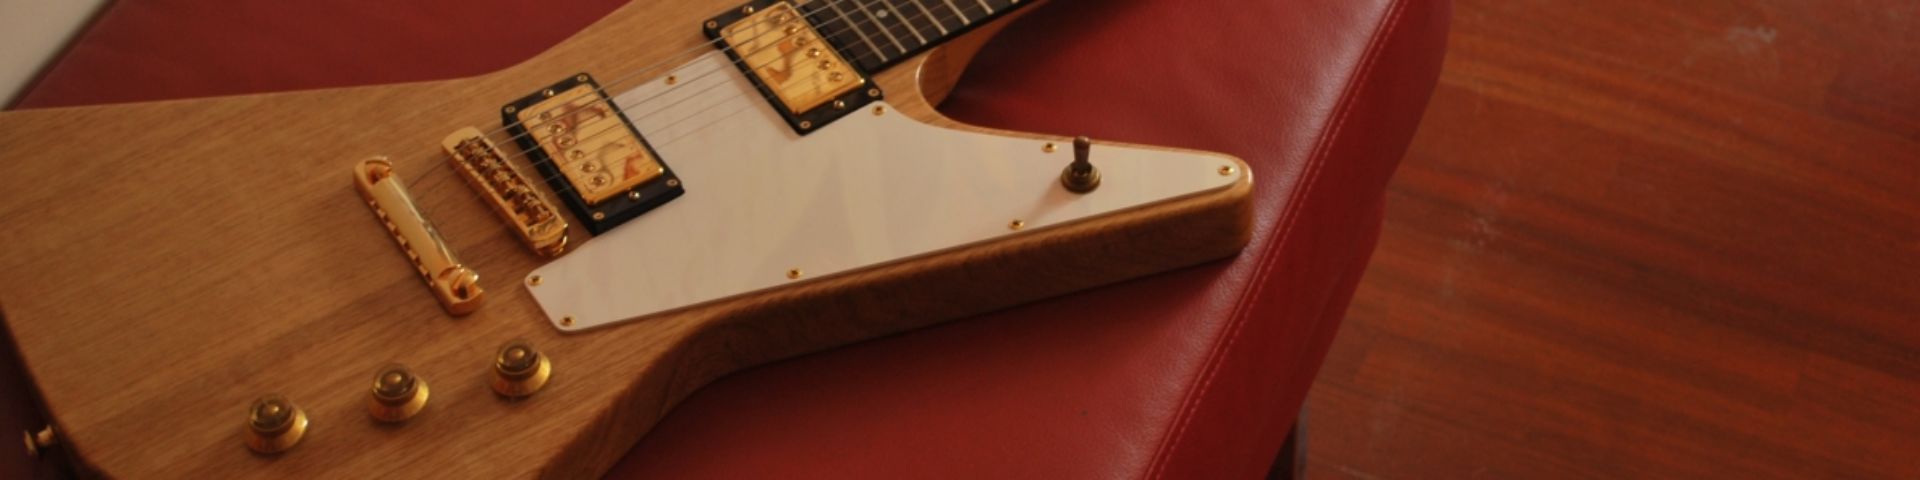 Gibson Explorer - E-Gitarrenguru.de